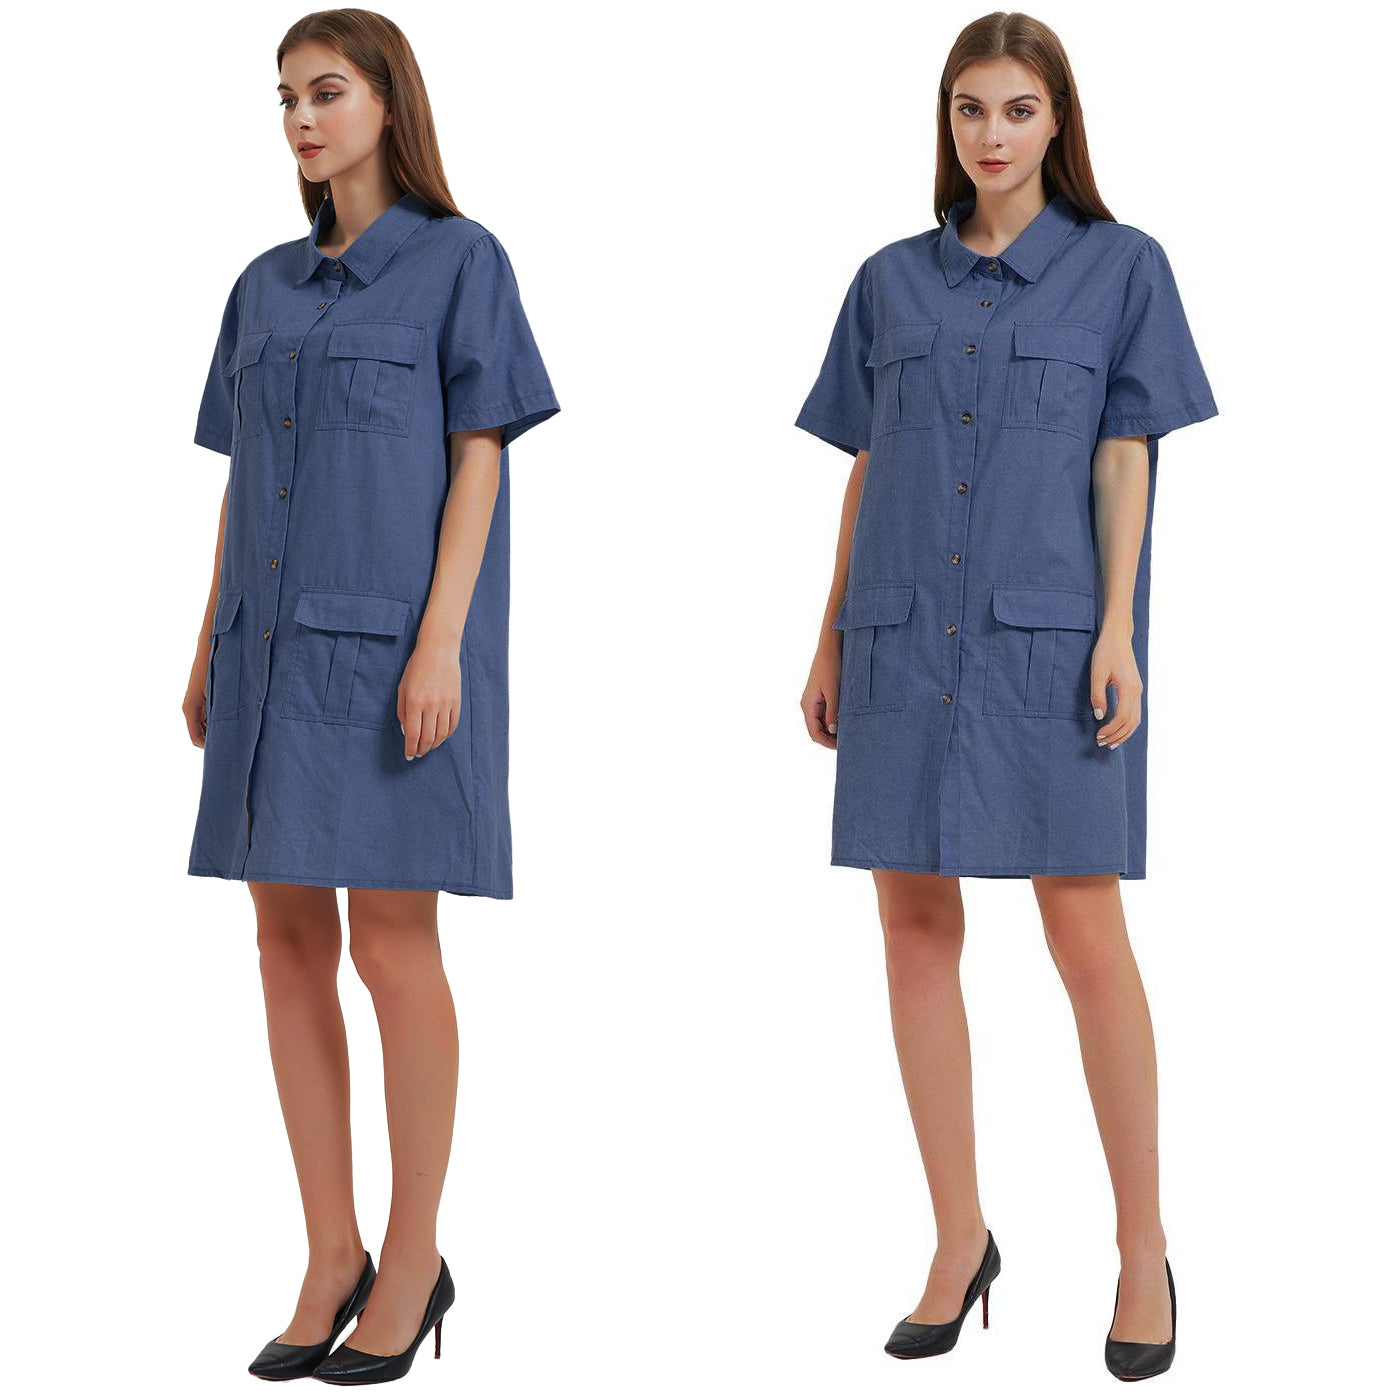 Anna-Kaci Women Short Sleeve Jean Shirt Dress Button Down Collar Summer Casual Dresses with Pocket